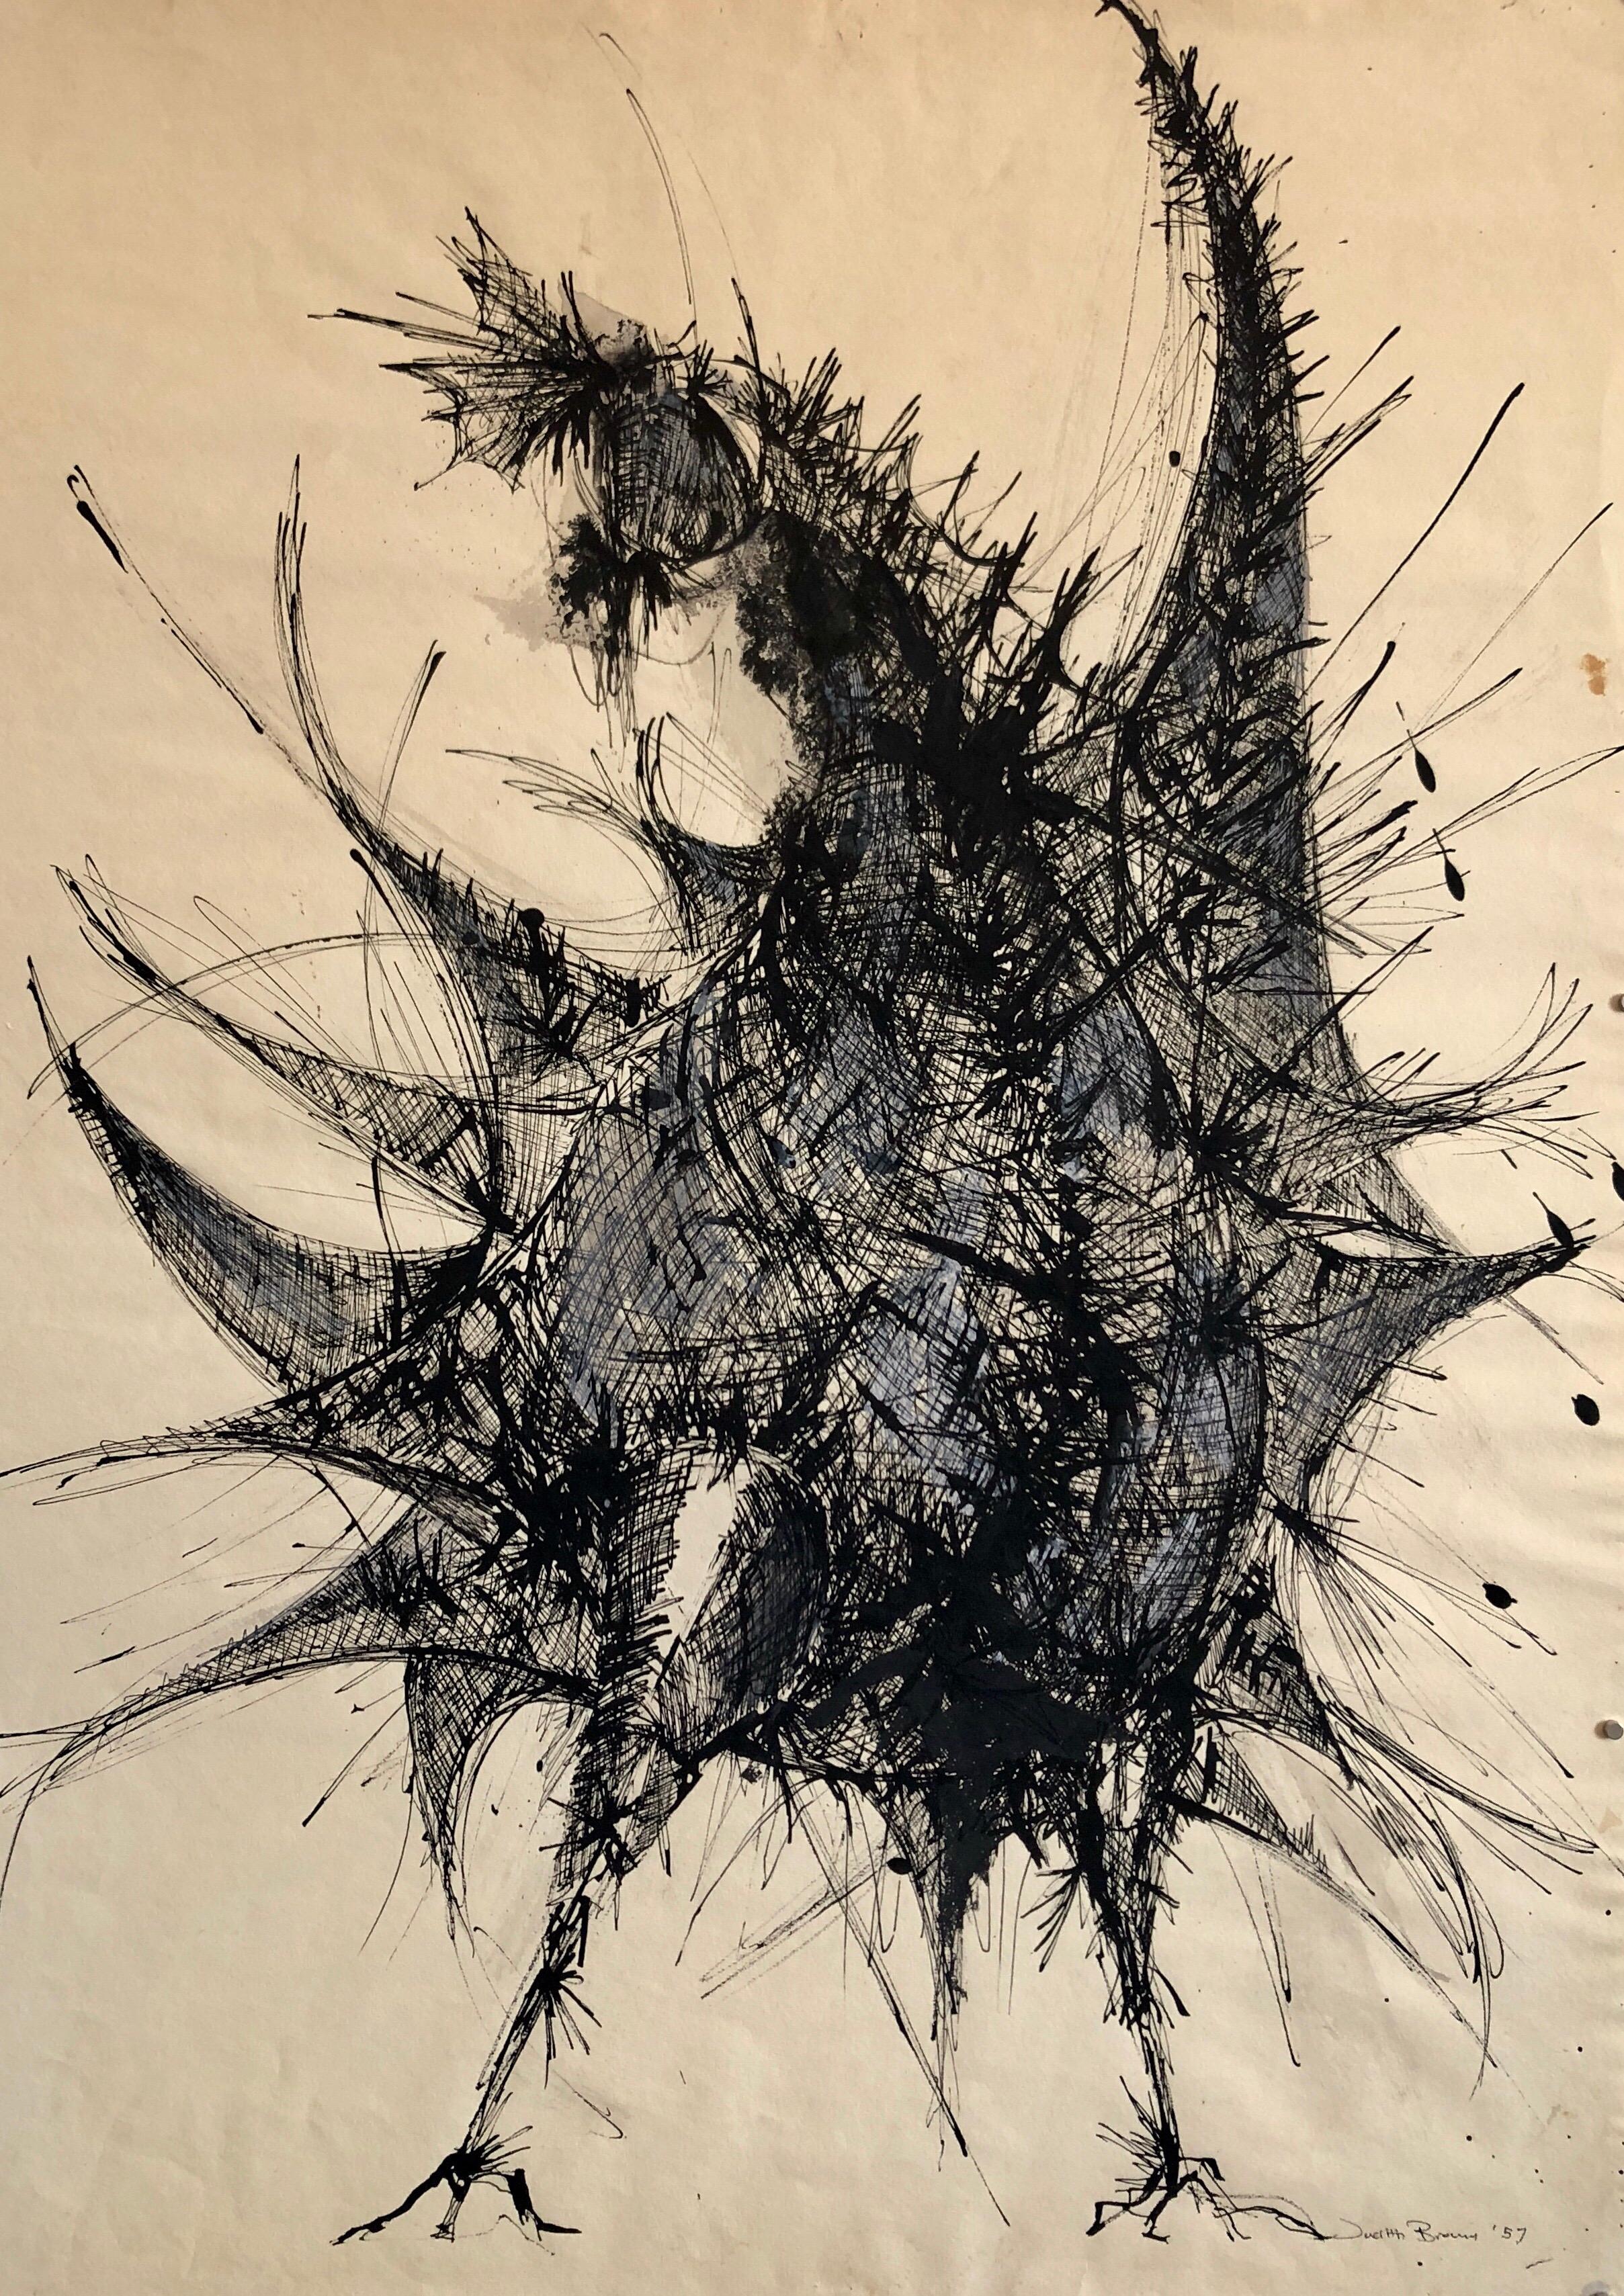 Grand dessin expressionniste abstraite représentant une coq